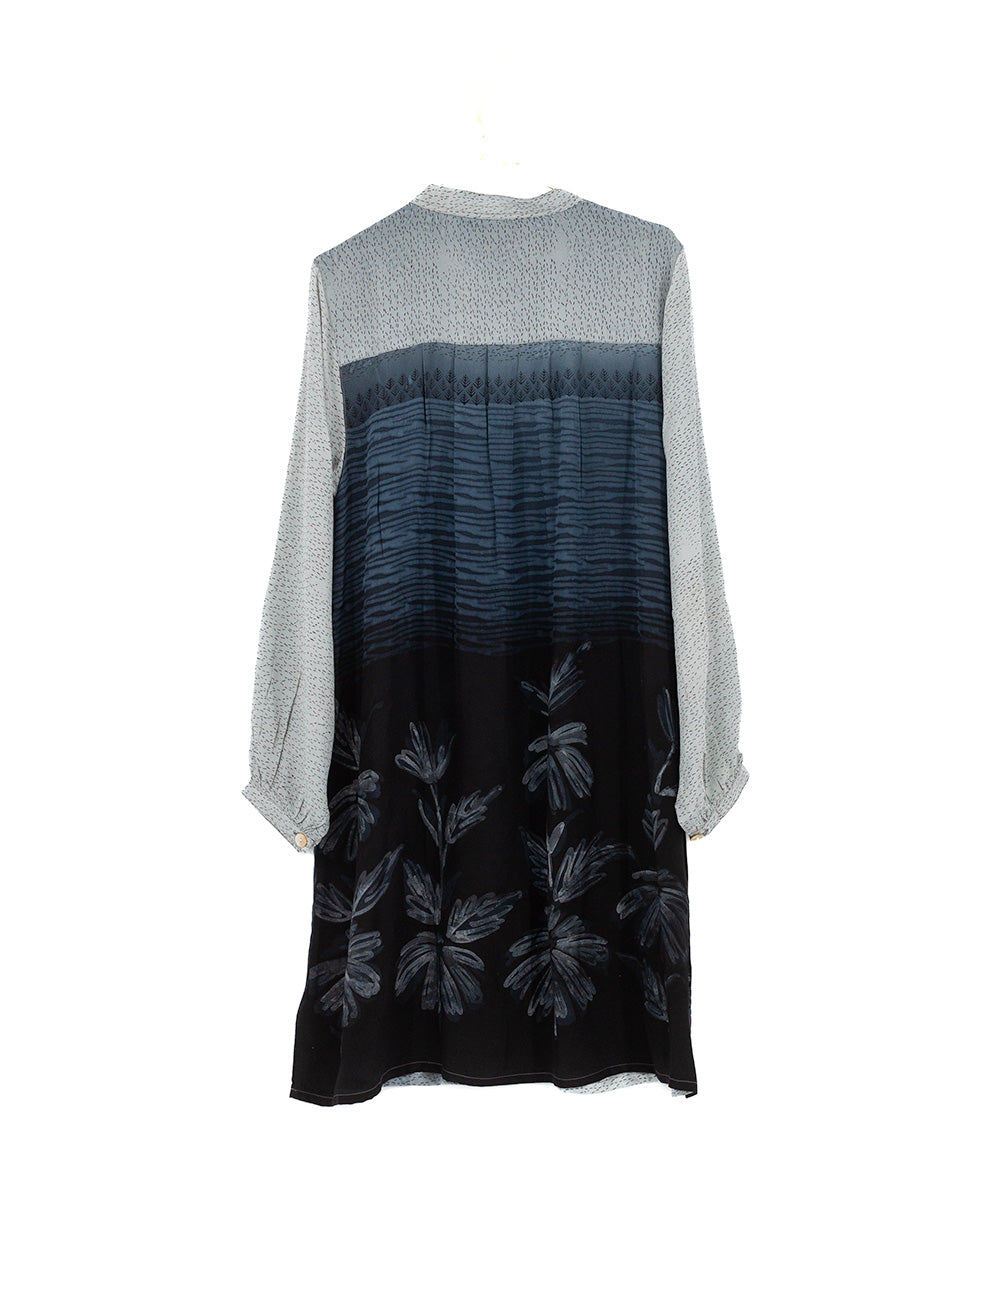 Anne Maria Shirt dress no. 92311